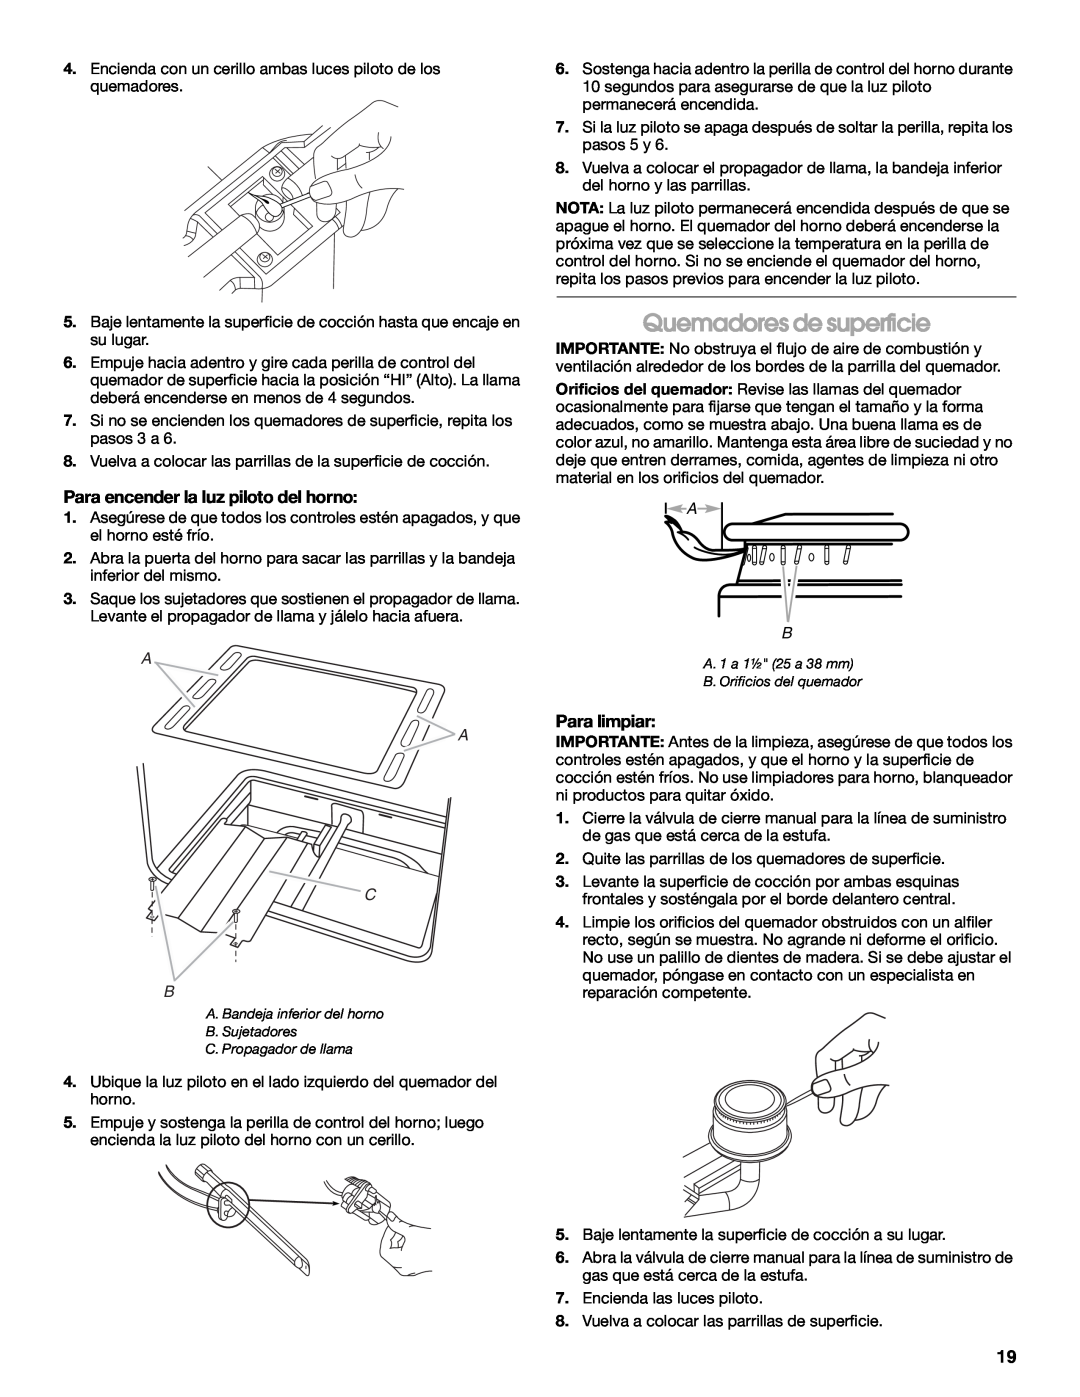 Amana W10320693A manual Quemadores de superficie, Para encender la luz piloto del horno, Para limpiar, A A C B 